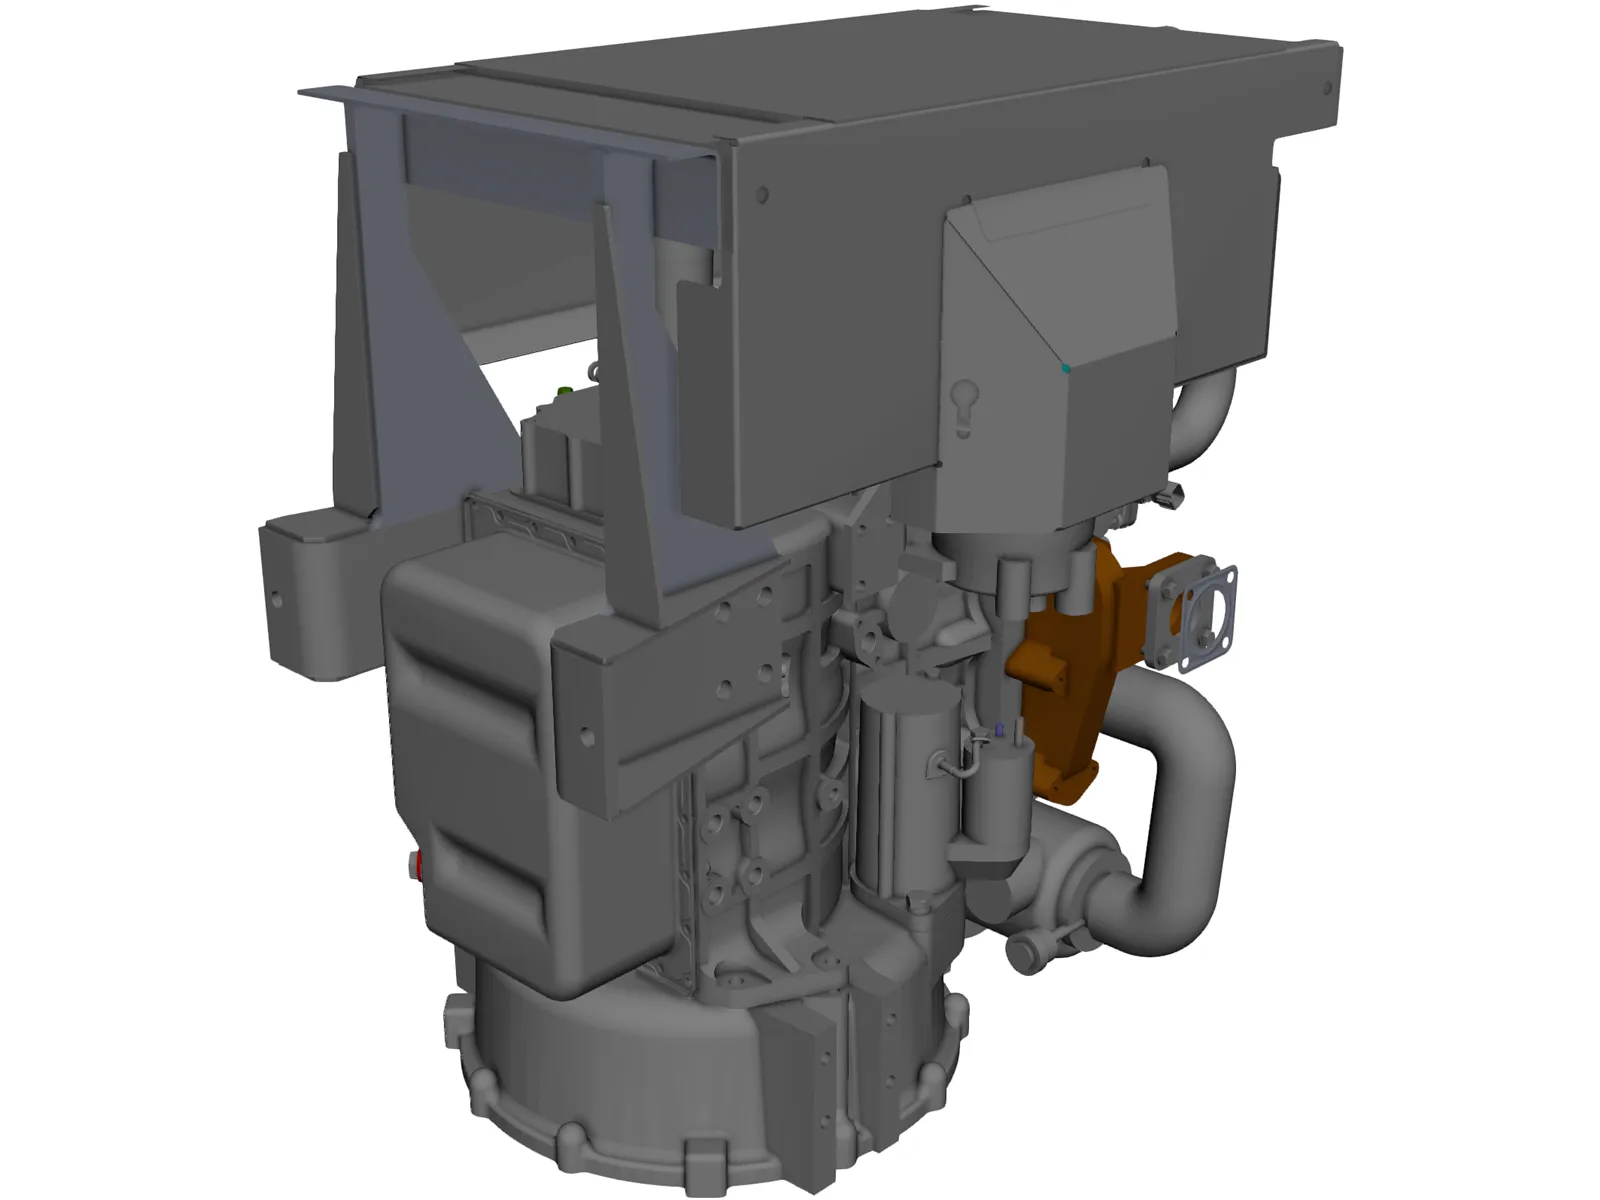 Perkins 403D-15 Engine 3D Model